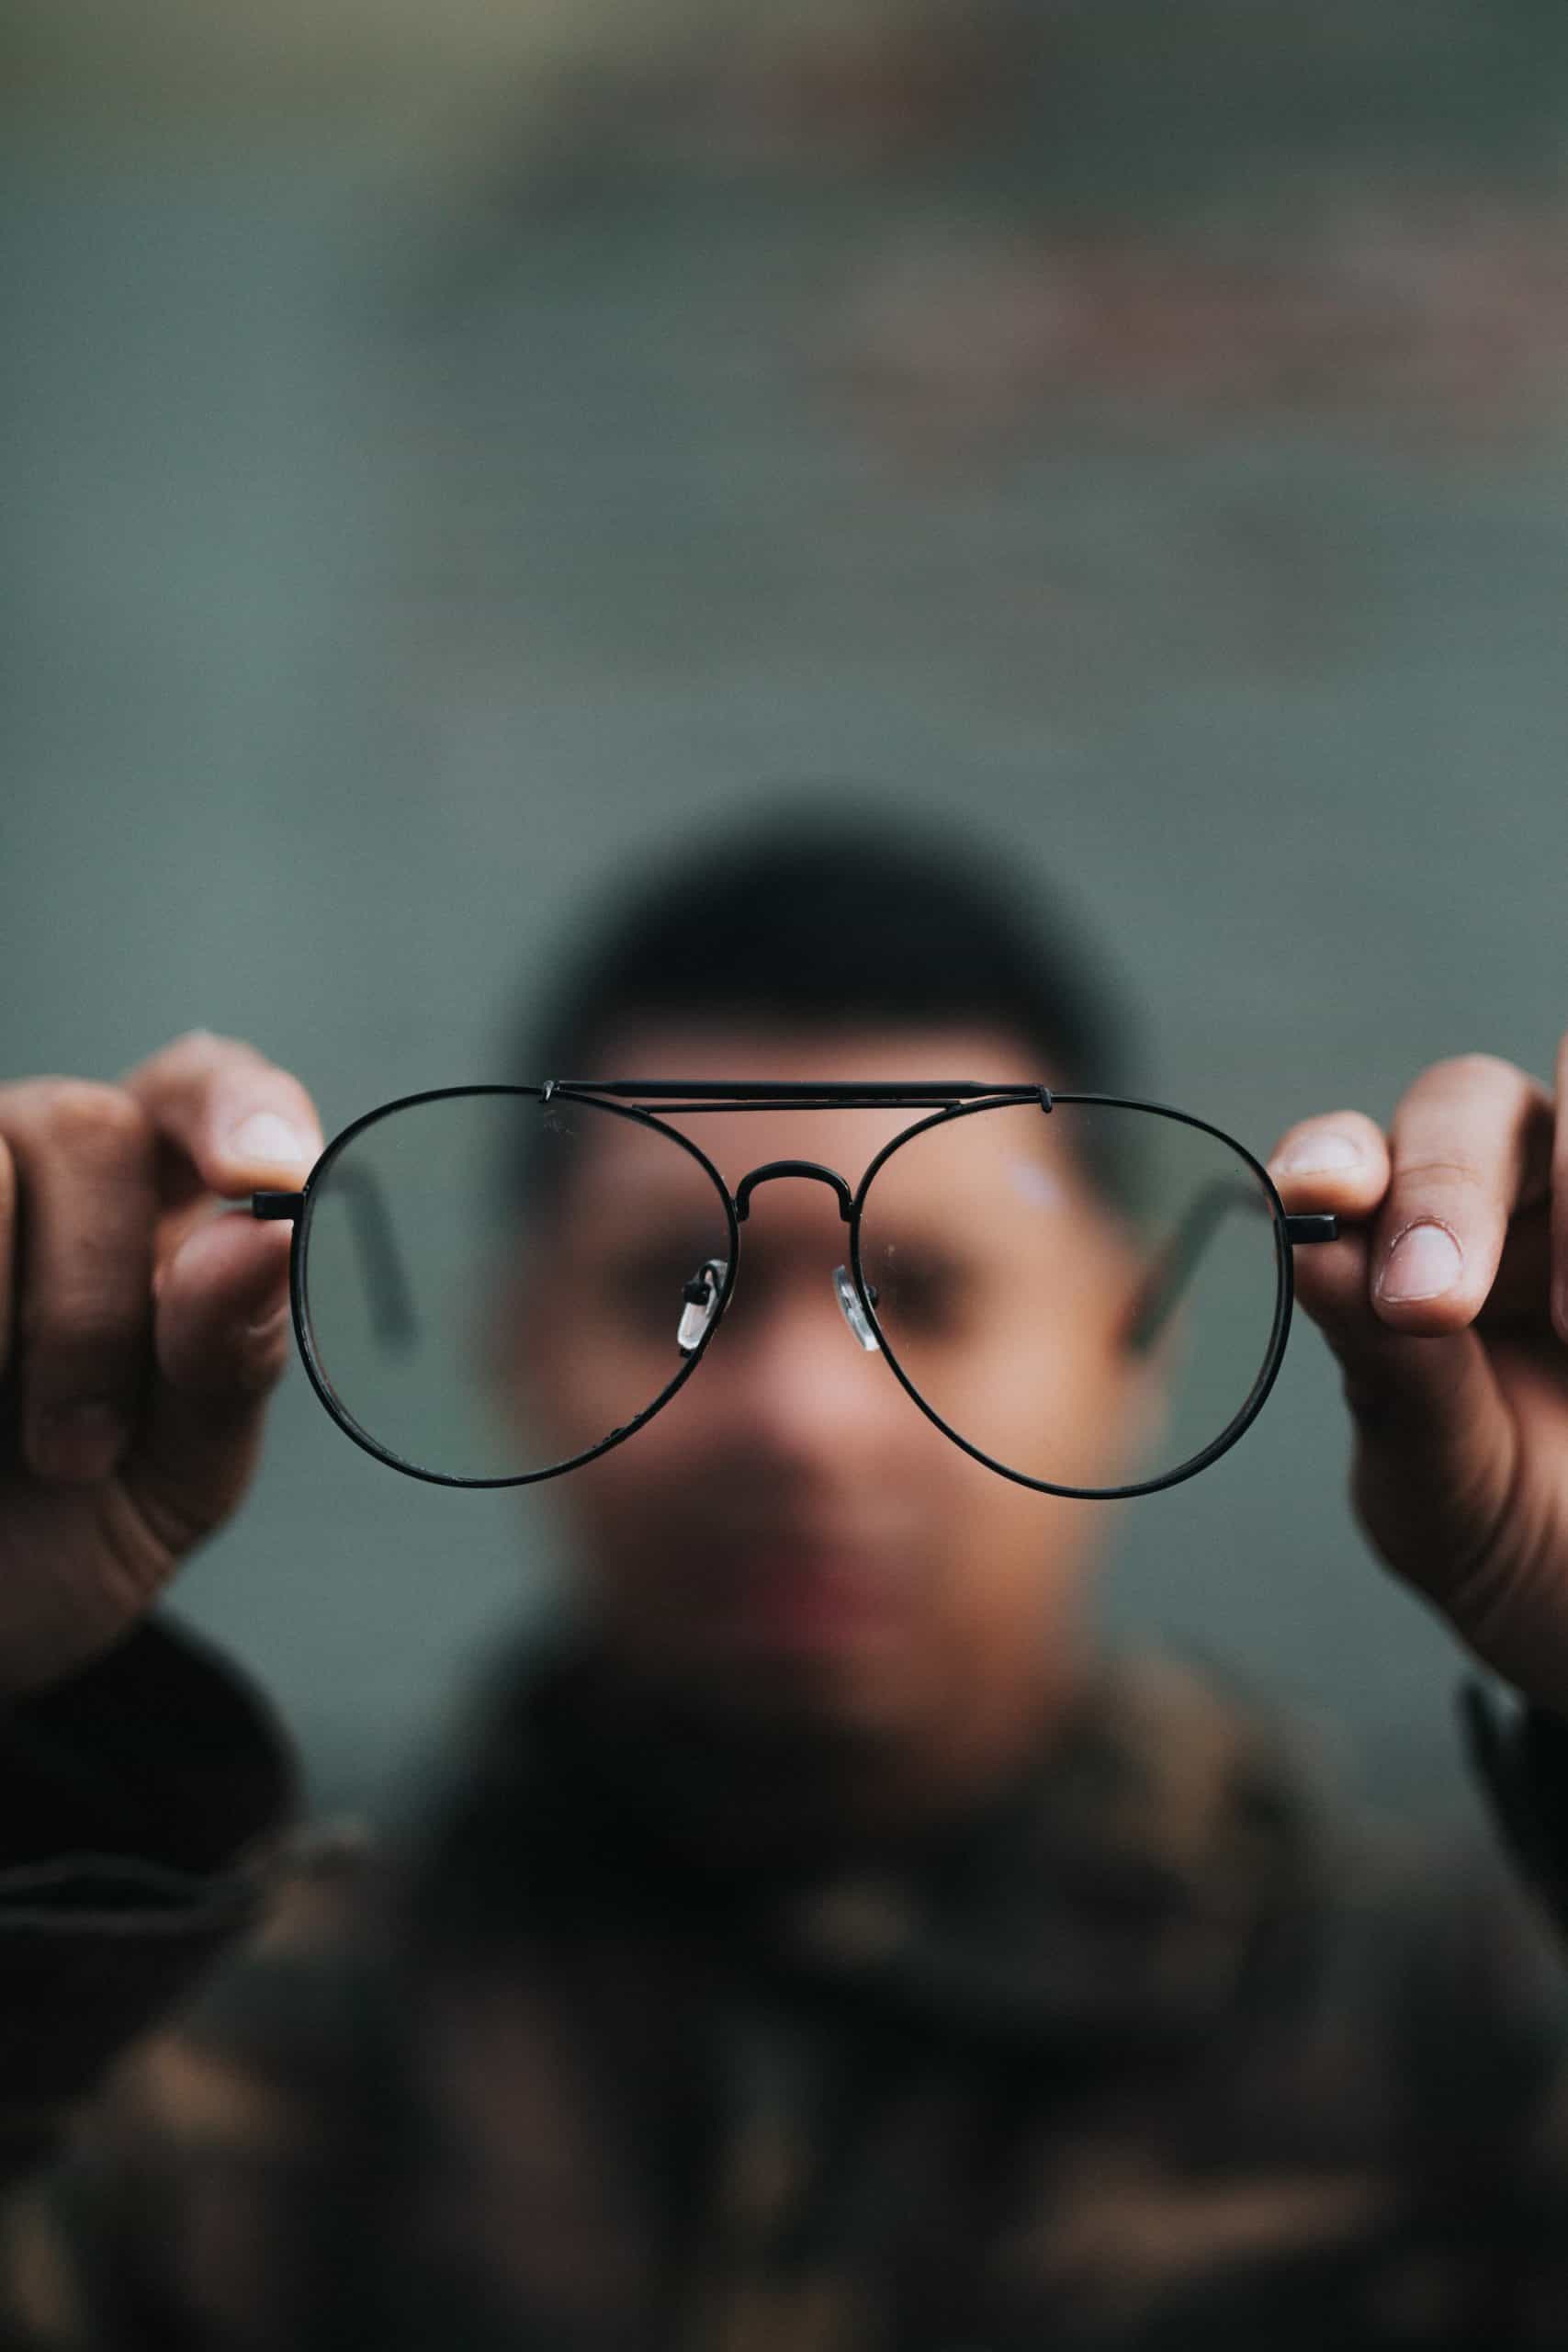 Poradnik dotyczący okularów ochronnych korekcyjnych – dbaj o swoje oczy podczas pracy!